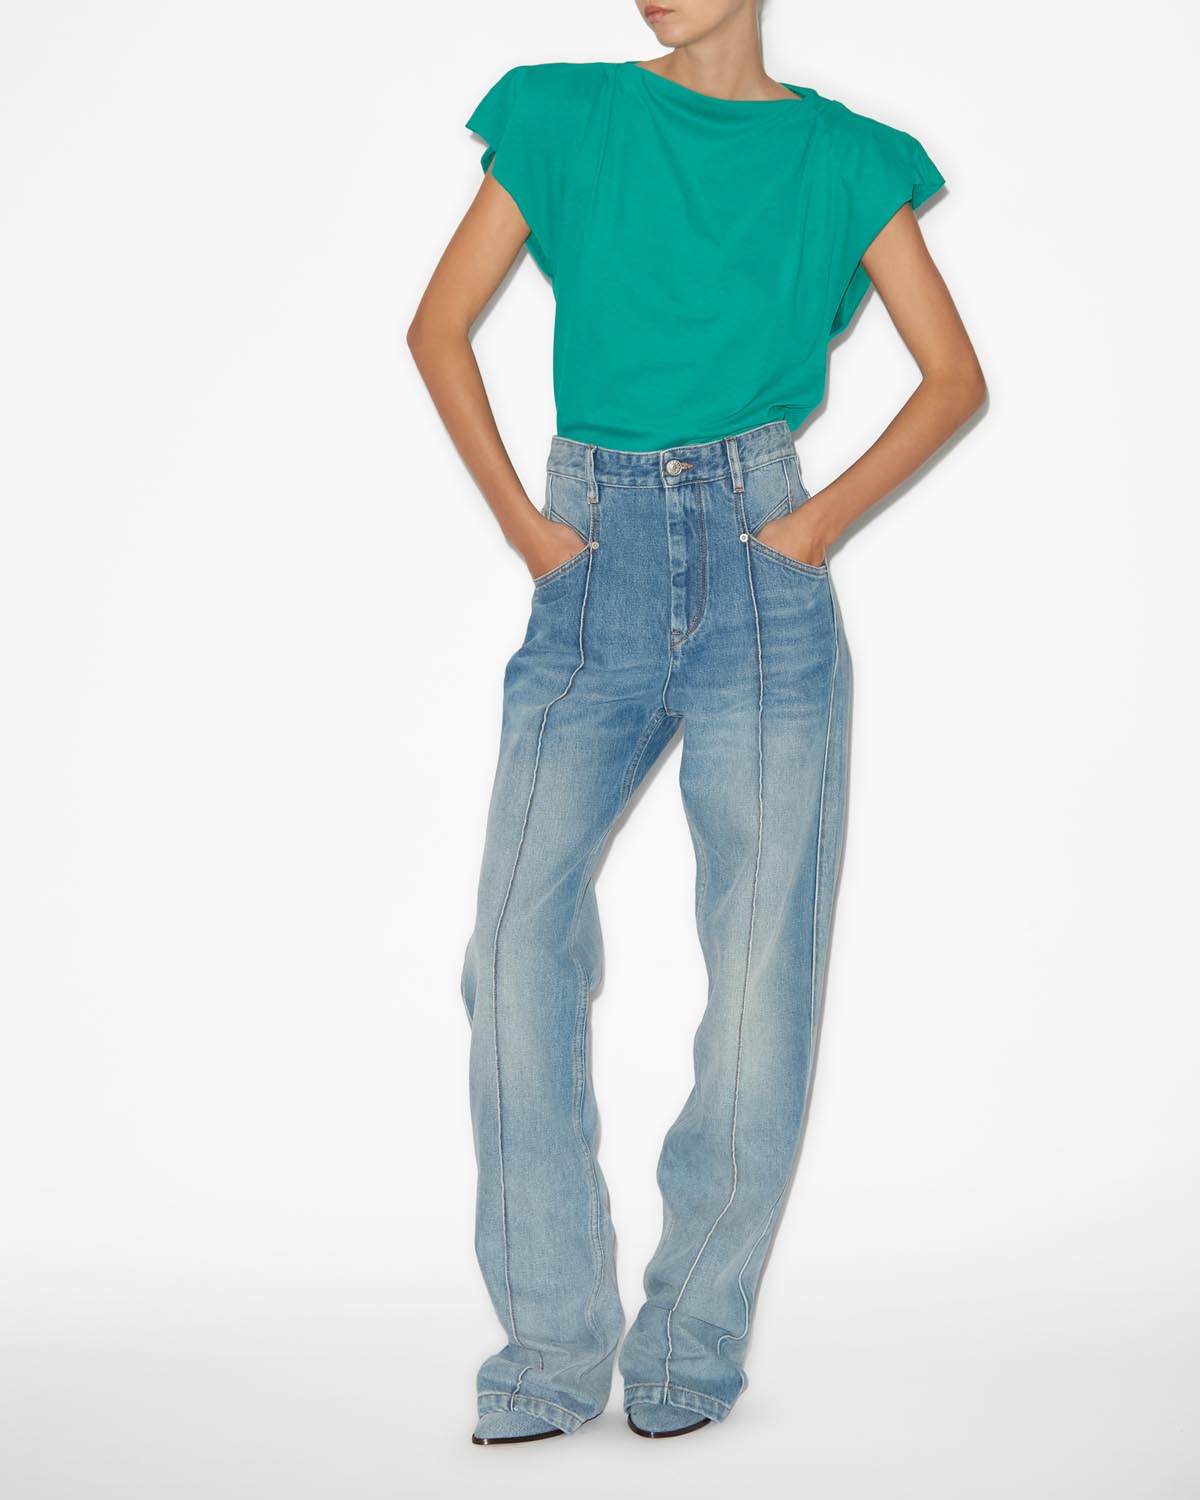 Sebani 티 셔츠 Woman Green 2